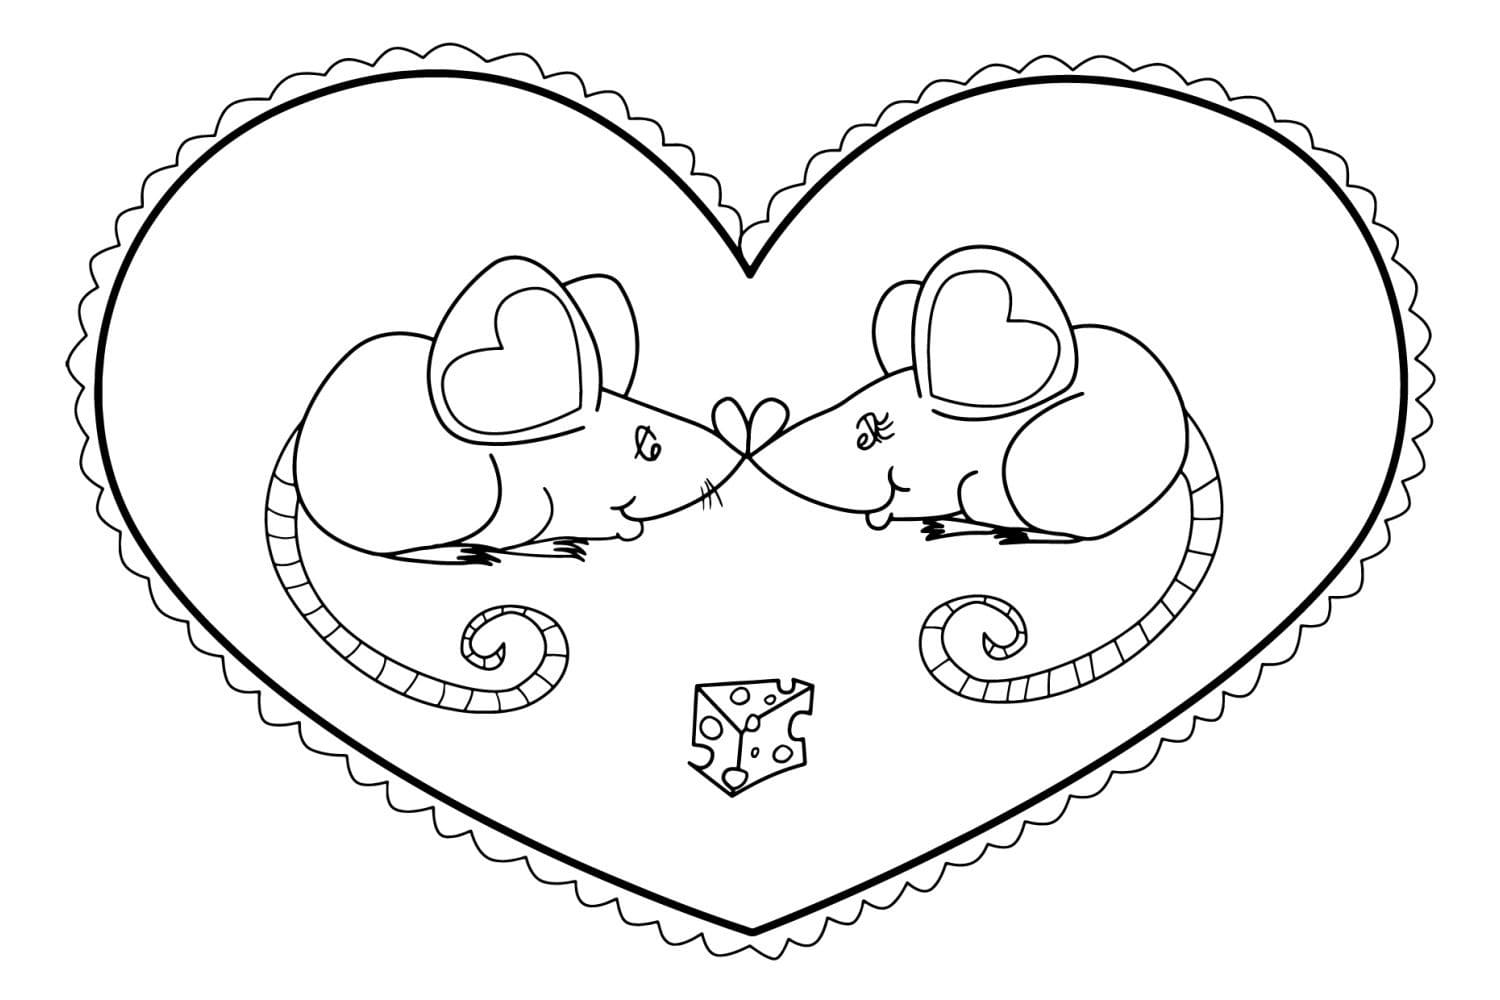 Para Colorear Día de San Valentín Los ratones se aman